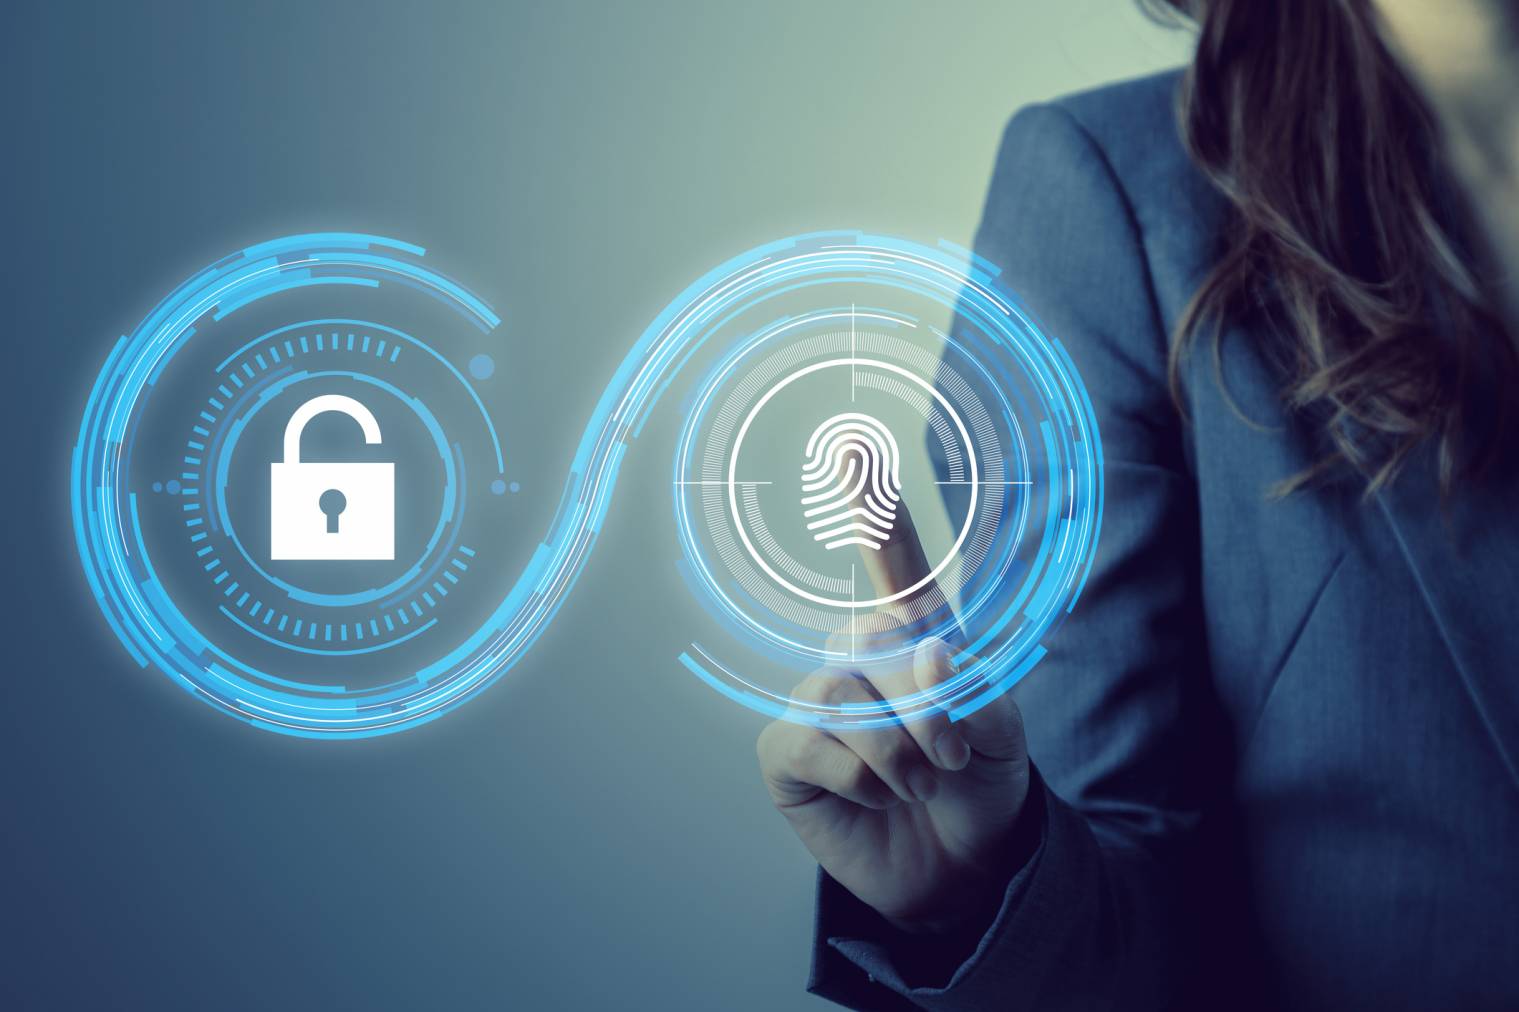 Sécurité biométrique : comment pirater un appareil protégé par une empreinte digitale